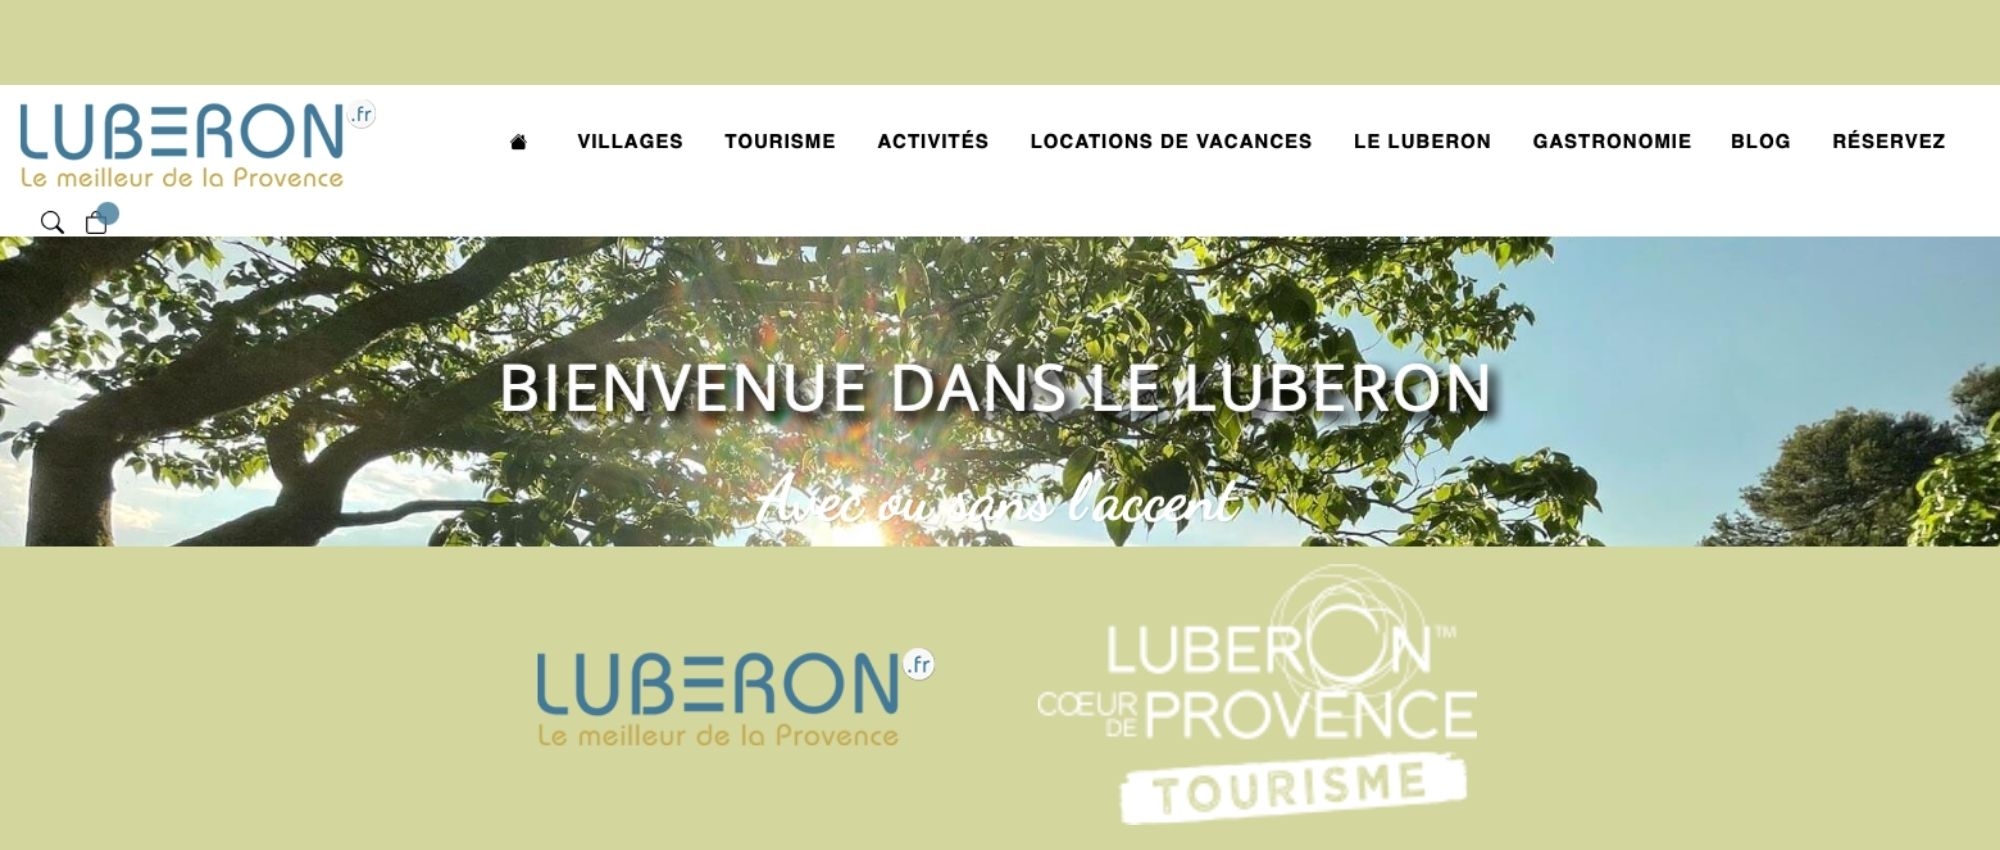 Partenariat innovant entre Luberon.fr et l'OT Luberon Coeur de Provence